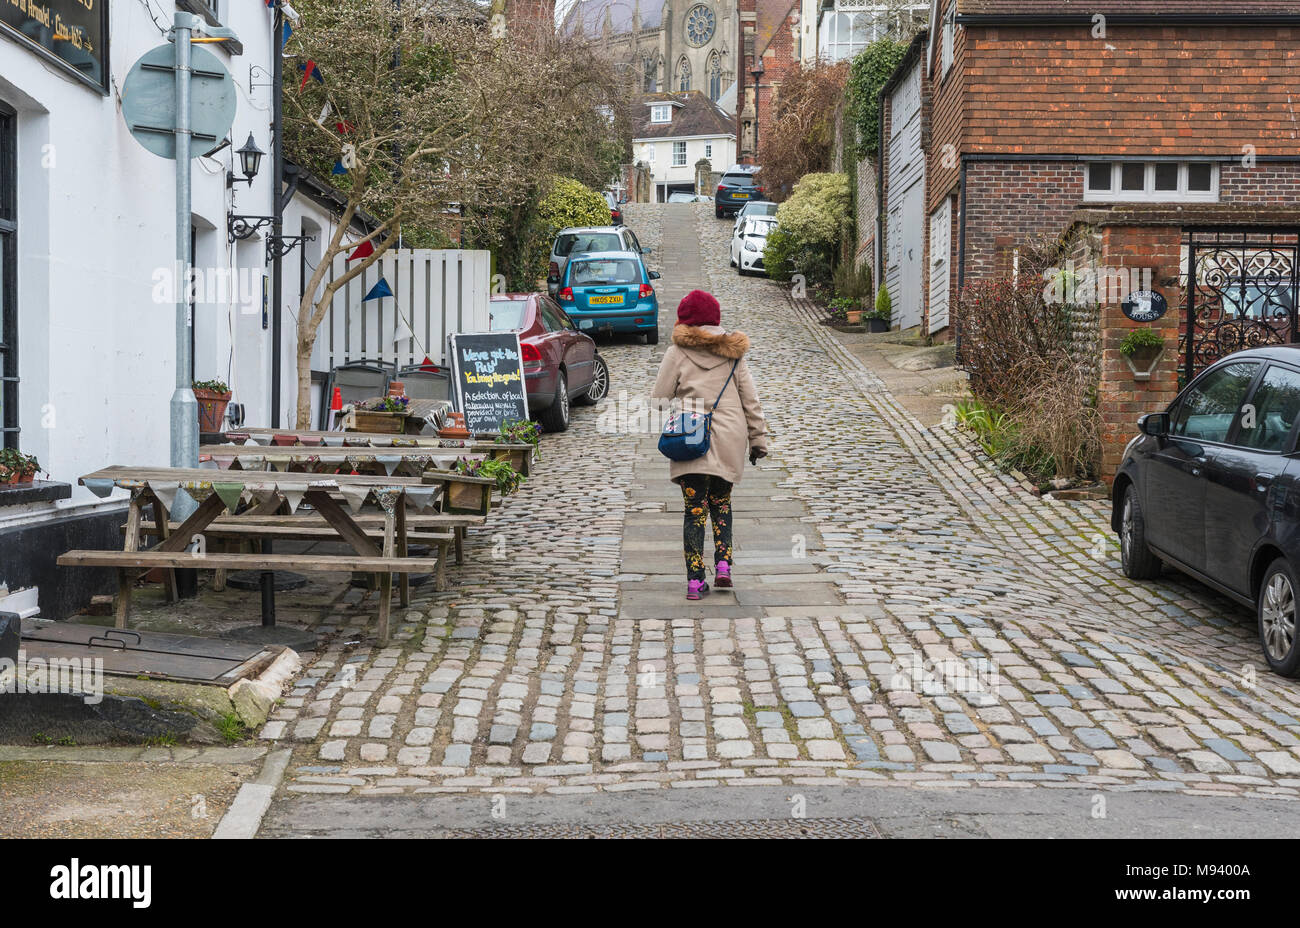 Jemand zu Fuß bis Kings Arms Hill, eine historische Straße mit Kopfsteinpflaster auf einem steilen Hügel in der historischen Marktstadt in Arundel, West Sussex, England, UK. Stockfoto